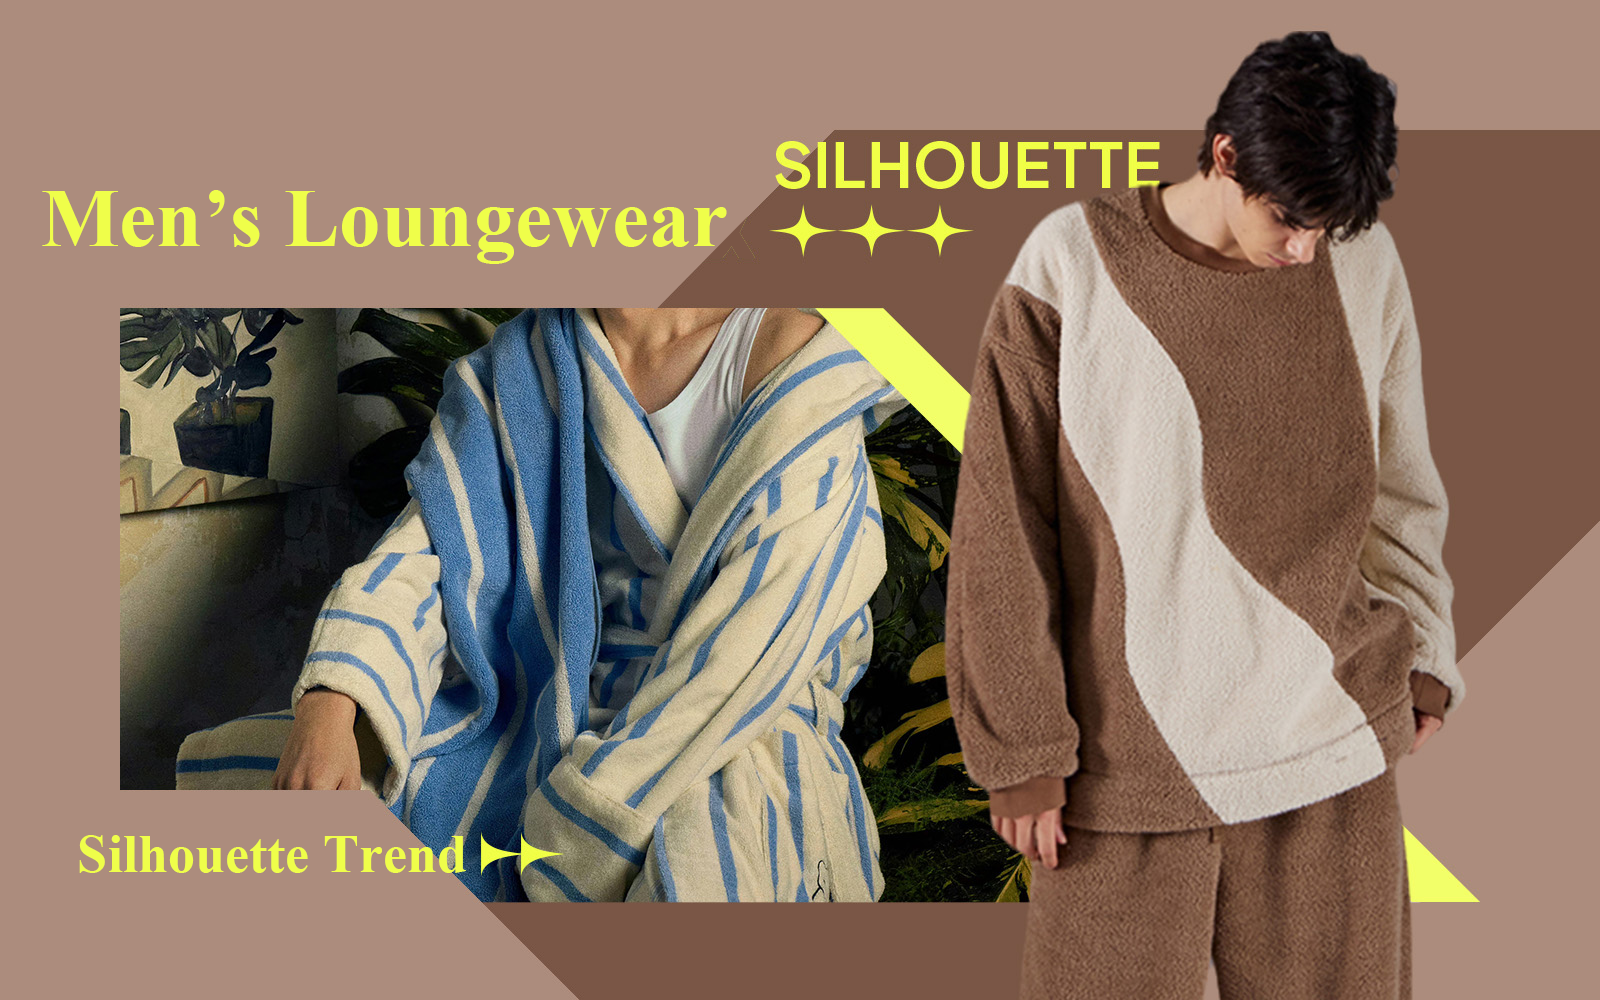 Warm Winter -- The Silhouette Trend for Men's Loungewear